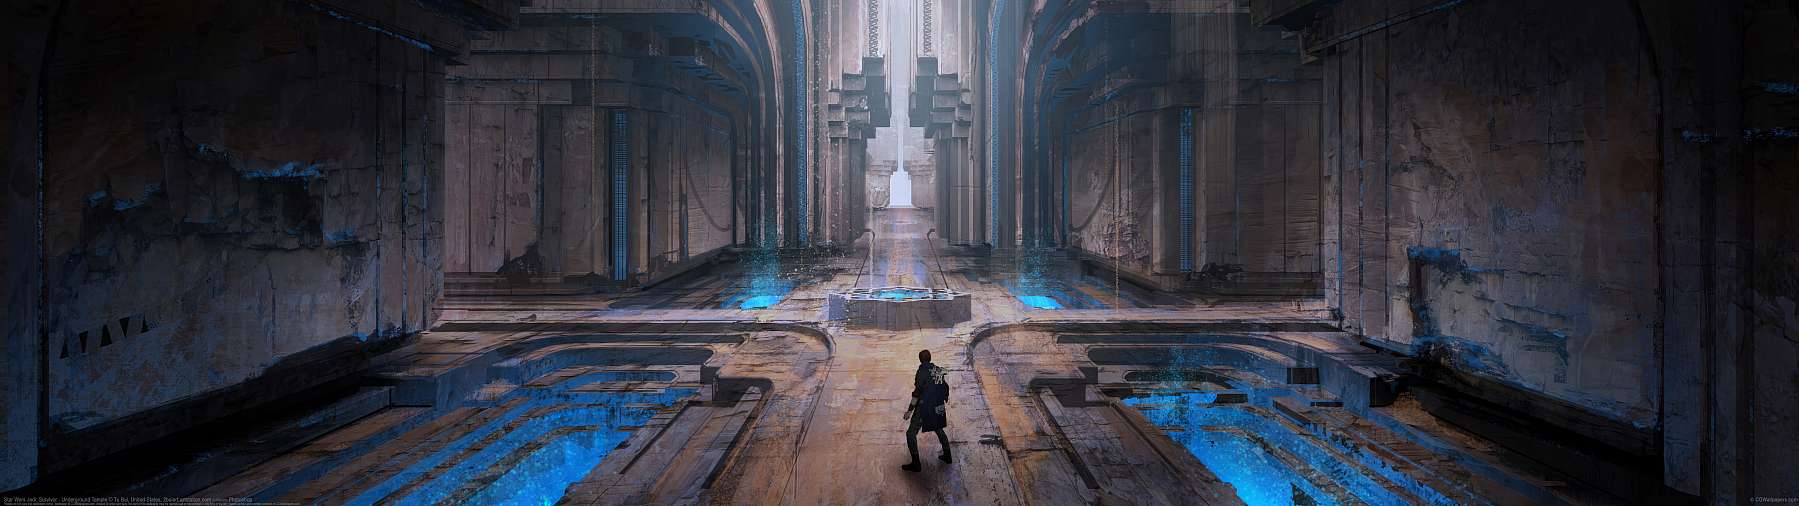 Star Wars Jedi: Survivor - Underground Temple ultralarge fond d'cran